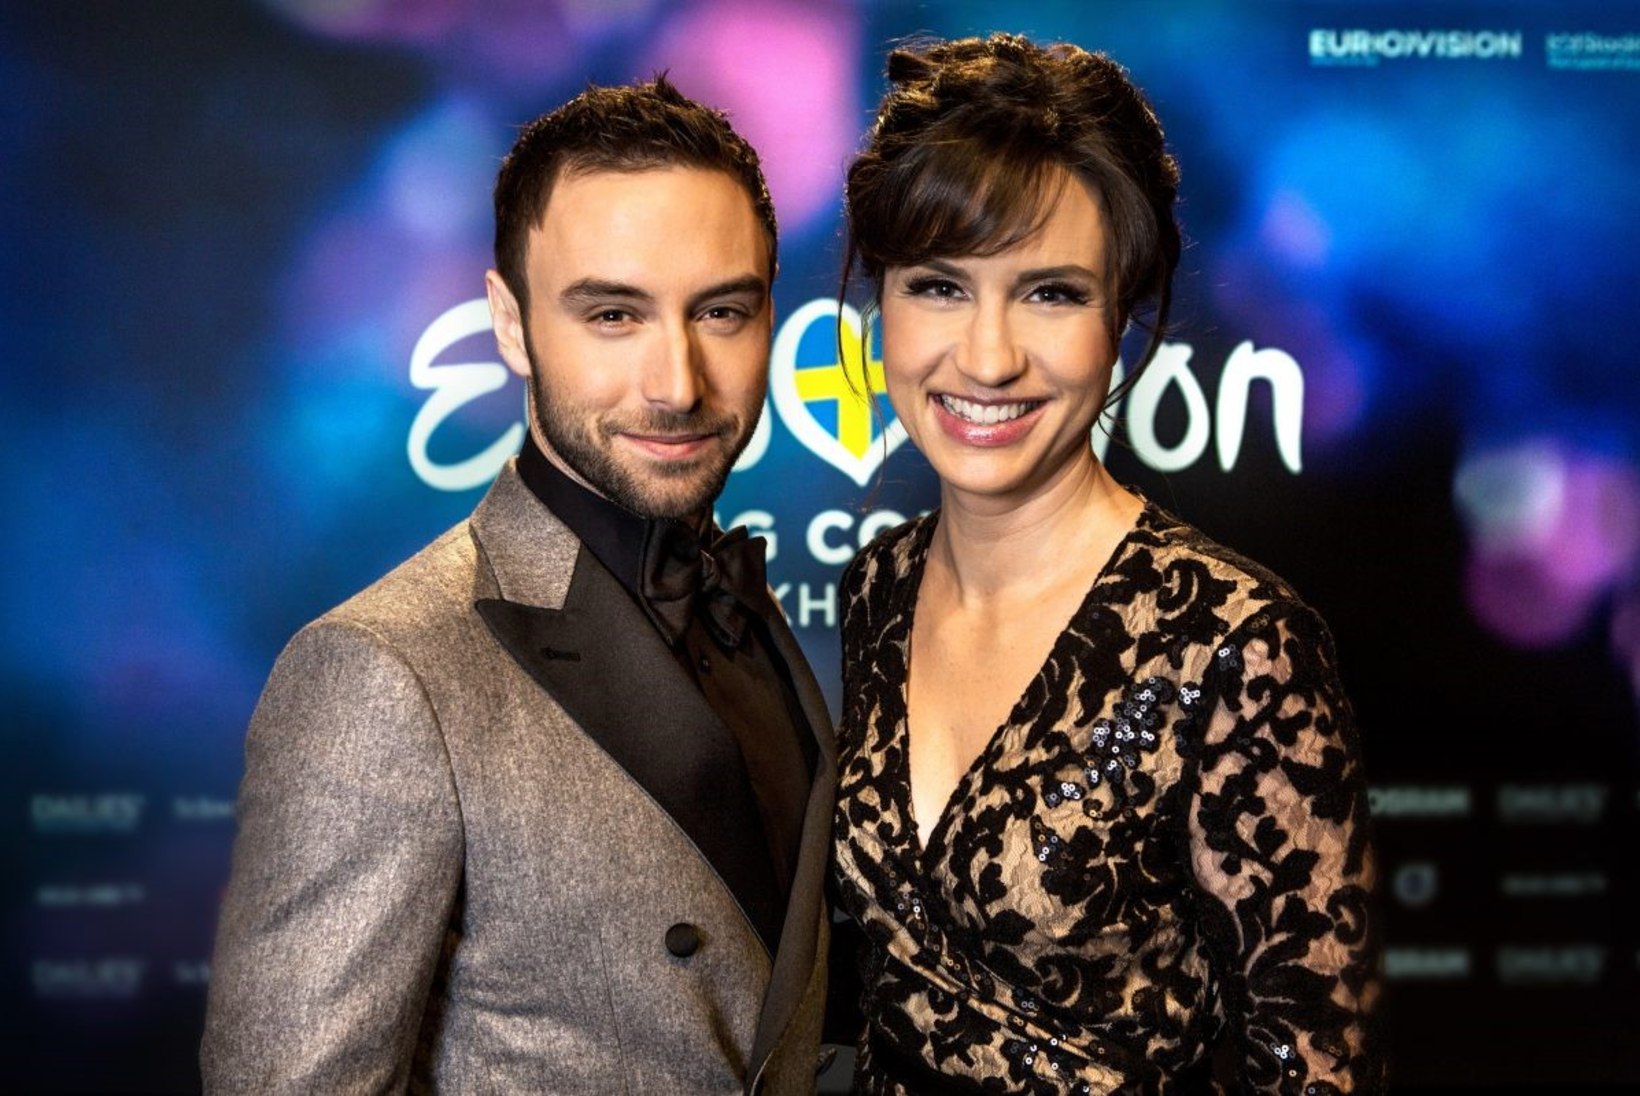 Eurovisioni õhtujuhid on Måns Zelmerlöw ja Petra Mede